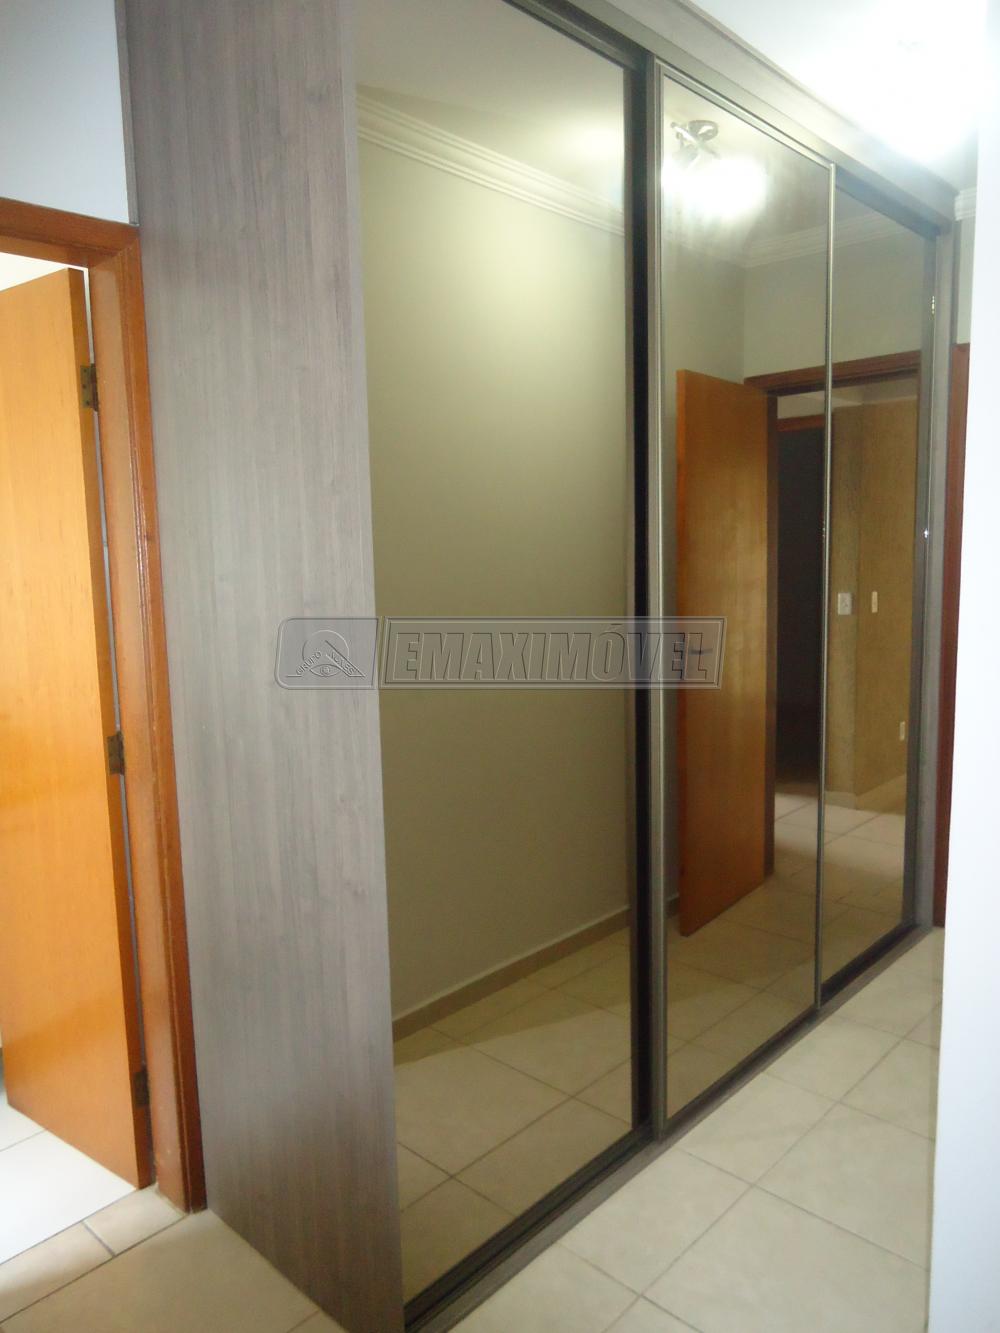 Alugar Apartamento / Padrão em Sorocaba R$ 1.450,00 - Foto 15